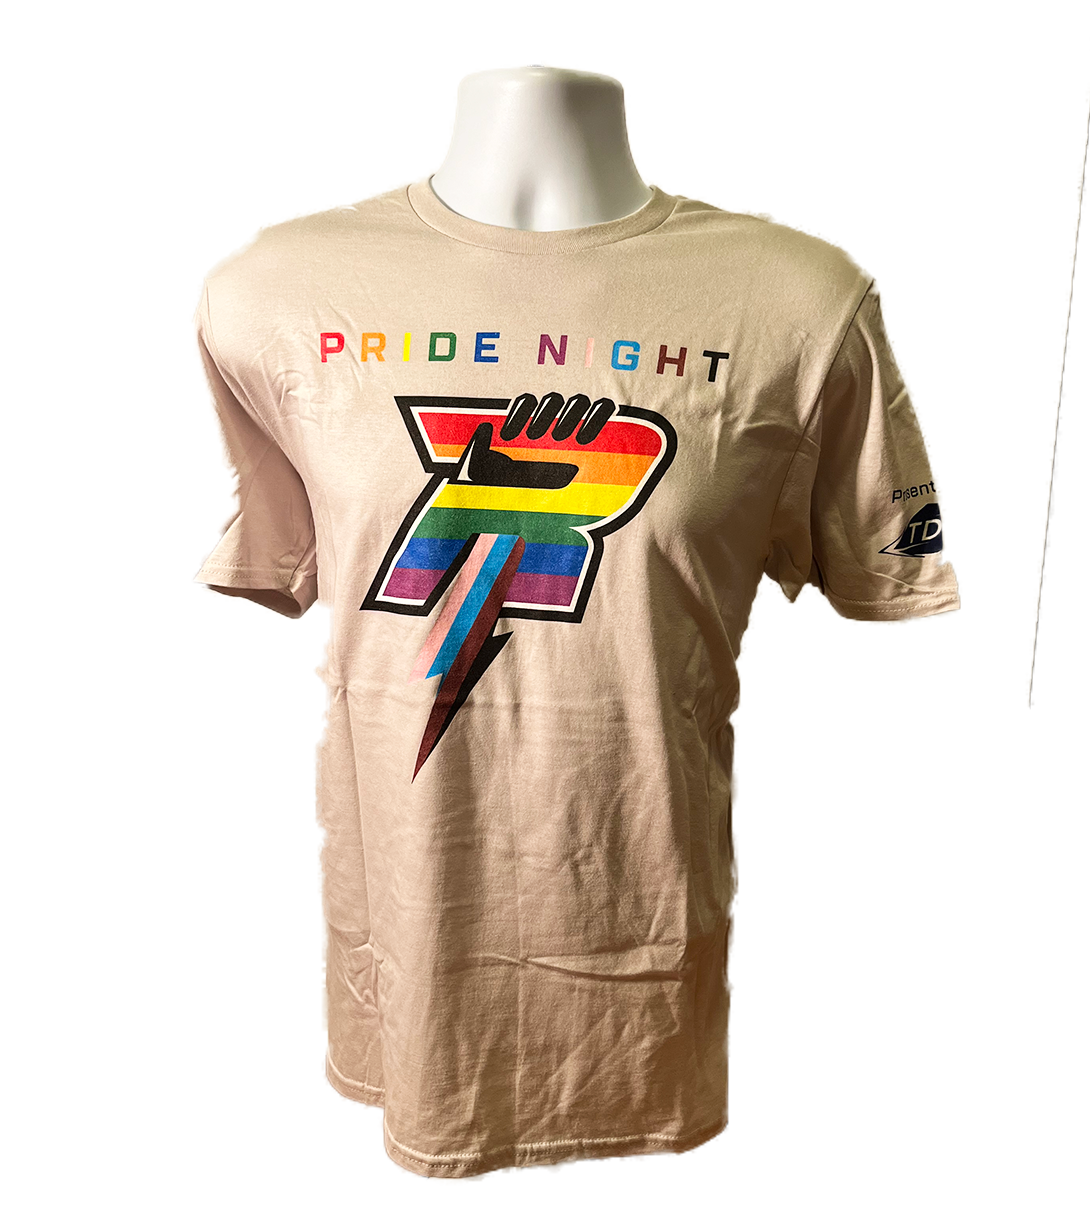 White Ice Radicals Pride Night T-Shirt